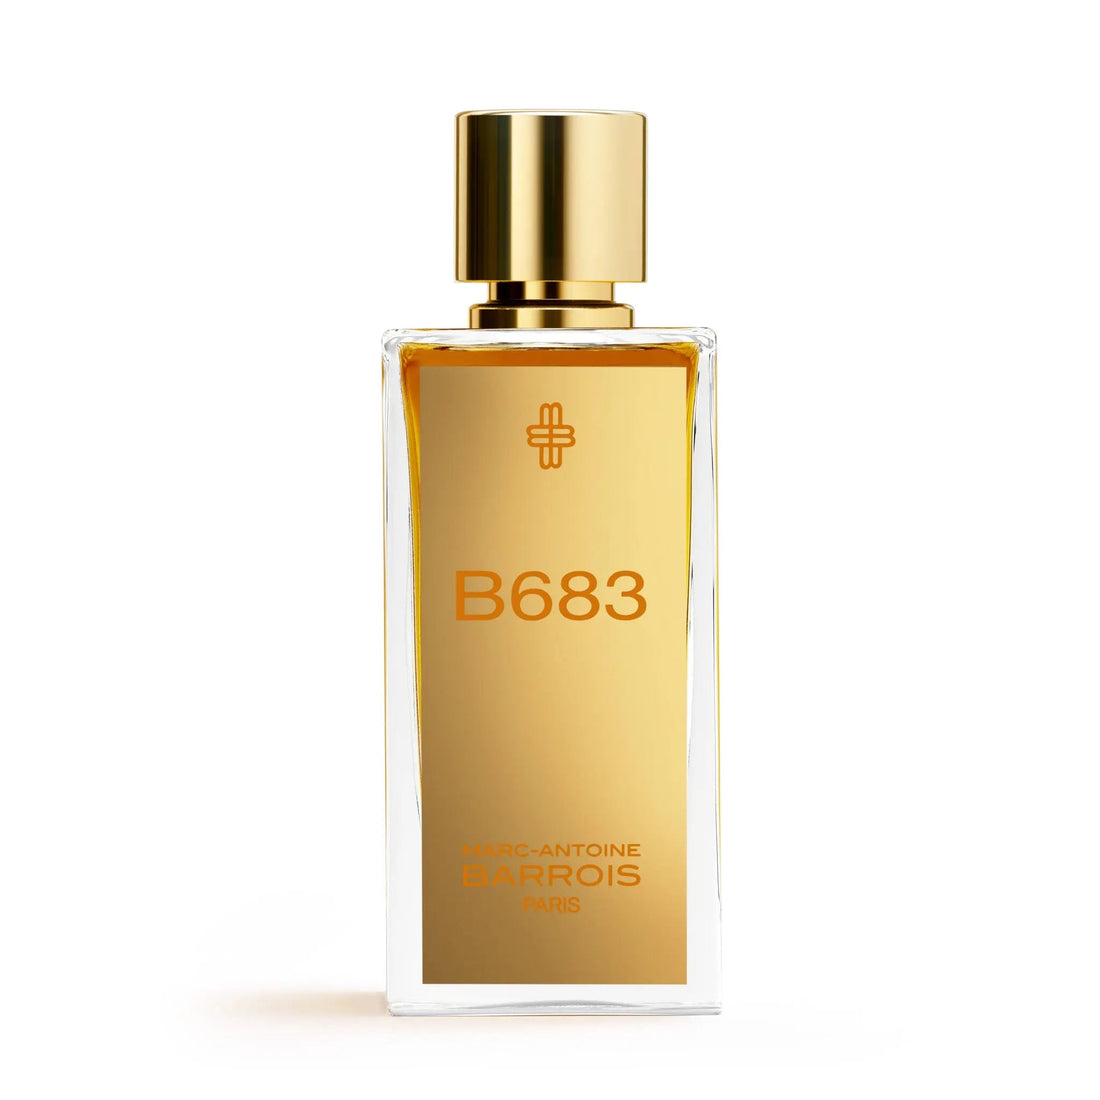 Barrois B683 eau de parfum - 100 ml